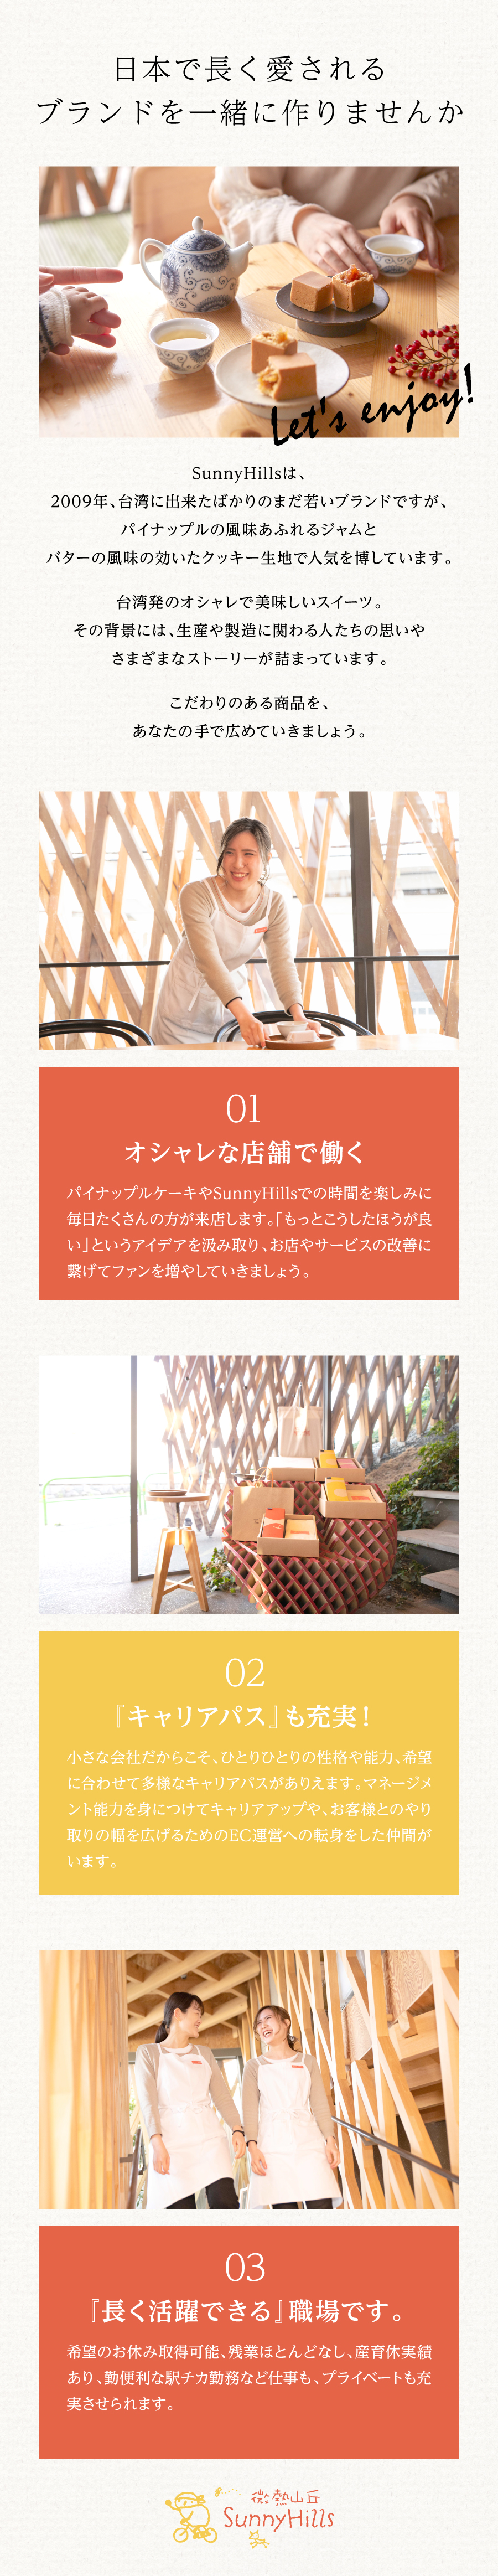 SunnyHills Japan株式会社からのメッセージ